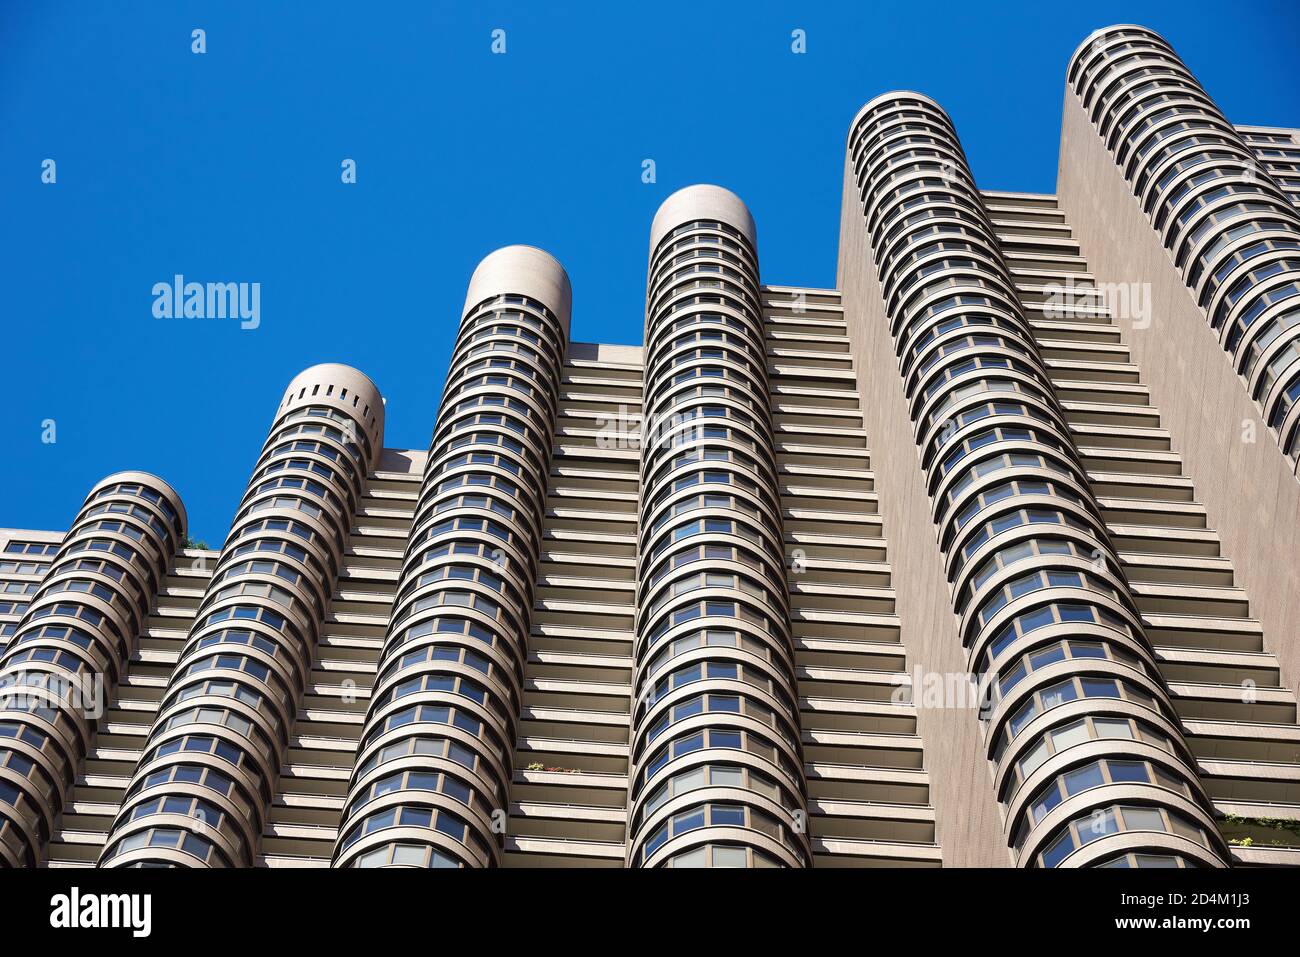 La façade cannelée avec baies vitrées est et la conception inhabituelle d'un immeuble d'appartements, se distingue contre le ciel bleu clair Banque D'Images